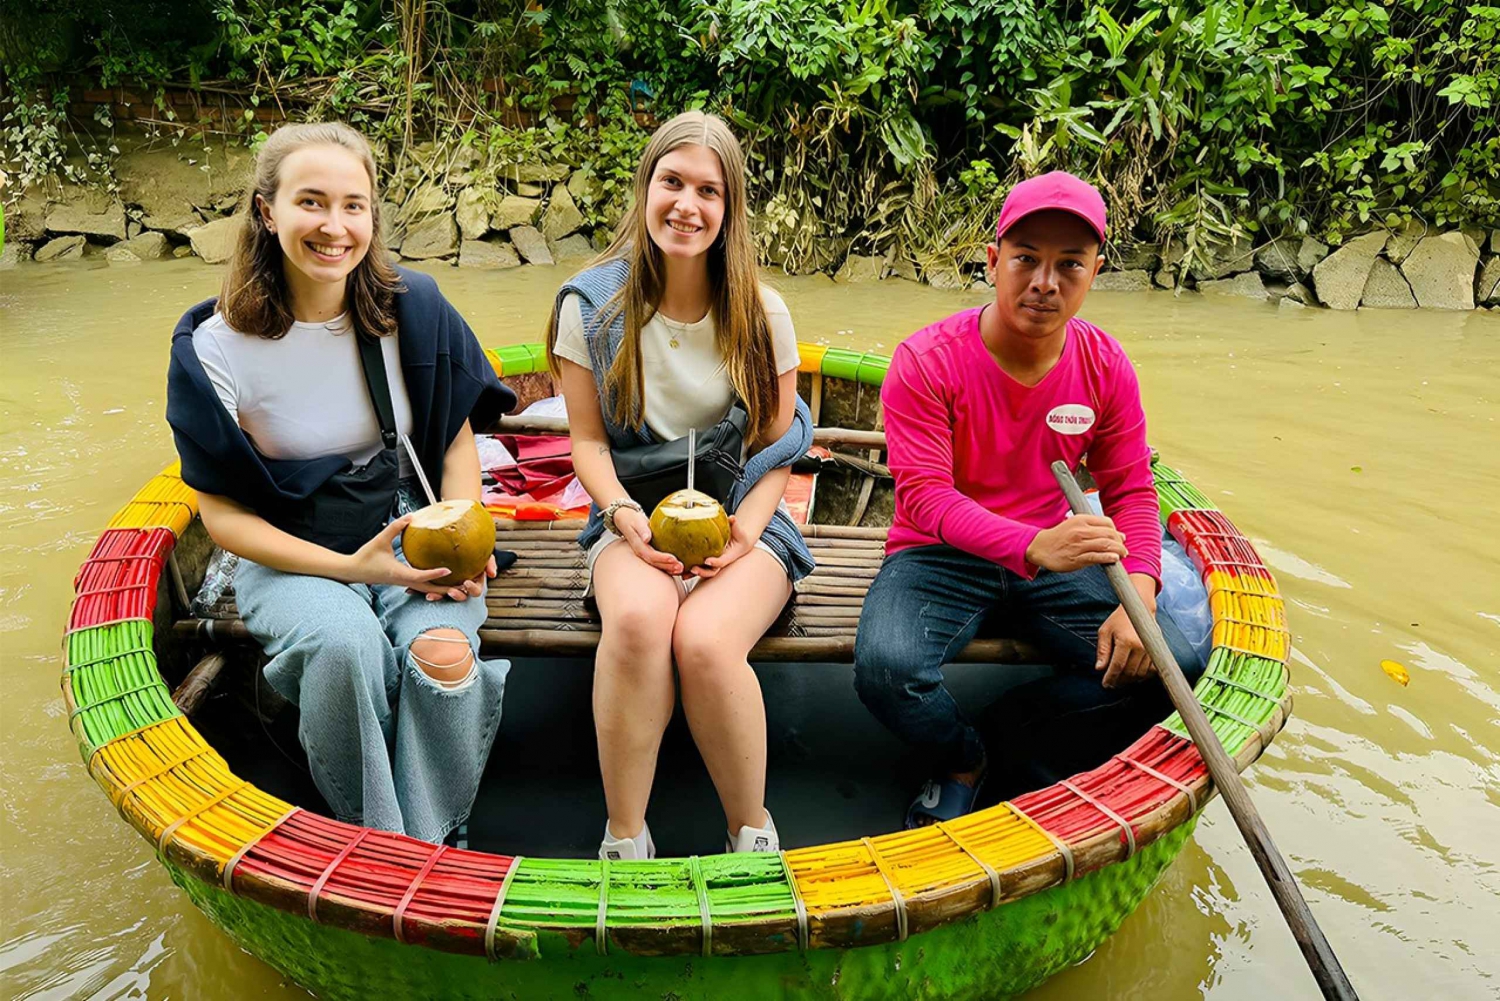 Promenade en bateau-panier à Hoi An dans la forêt de cocotiers d'eau